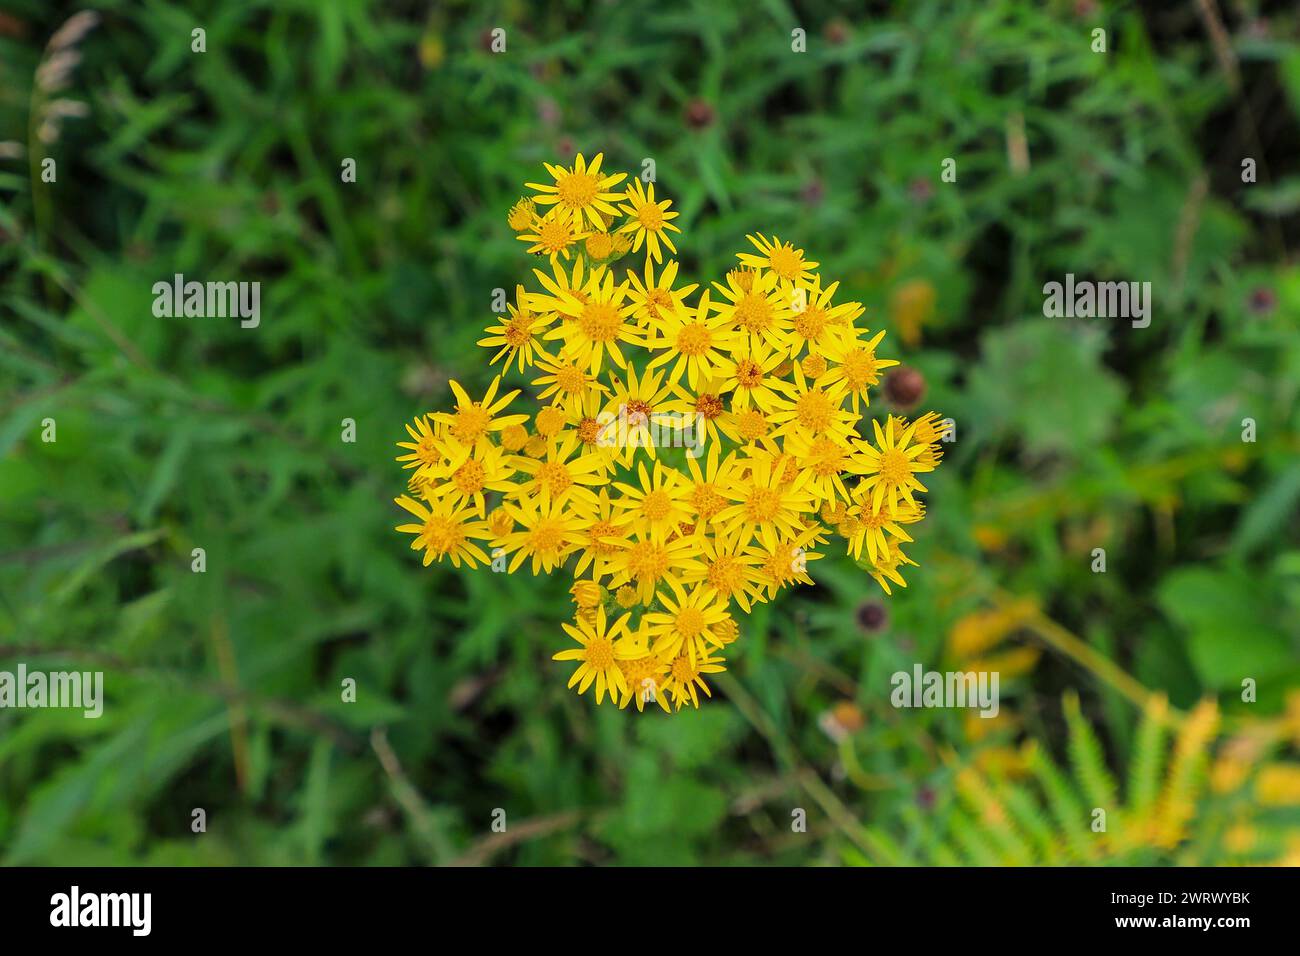 Die hellgelben Blüten von Gemeinem Ragkraut, Jacobaea vulgaris oder Senecio jacobaea, einer giftigen Pflanze, England, Vereinigtes Königreich Stockfoto